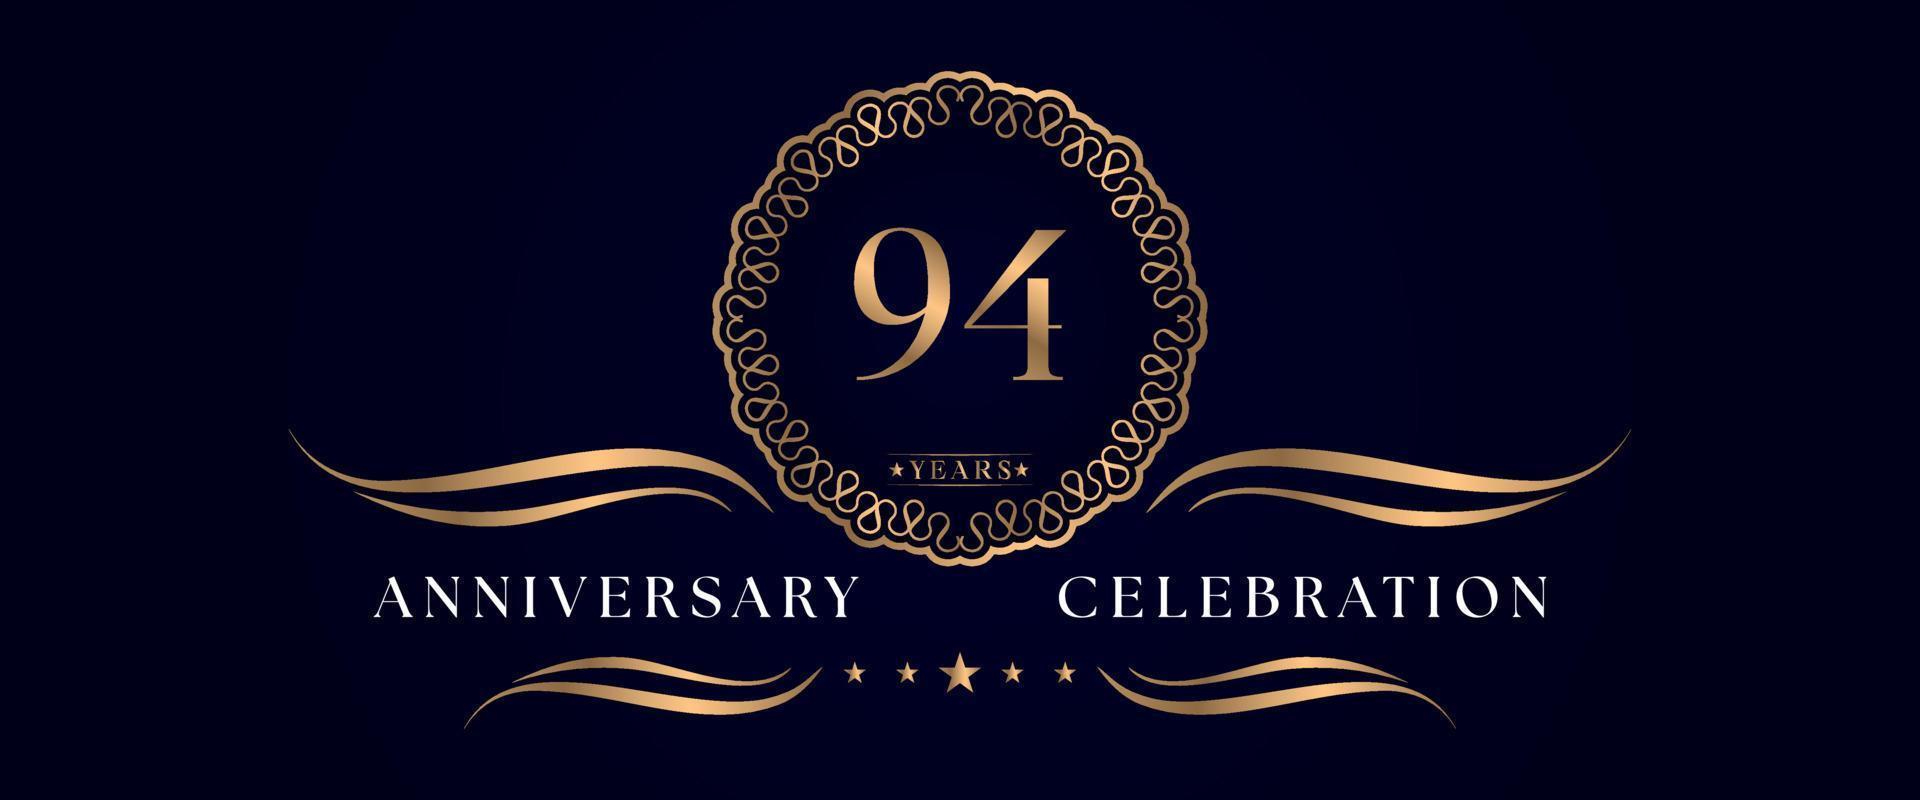 Celebración del aniversario de 94 años con un elegante marco circular aislado en un fondo azul oscuro. diseño vectorial para tarjetas de felicitación, fiesta de cumpleaños, boda, fiesta de eventos, ceremonia. Logotipo del aniversario de 94 años. vector